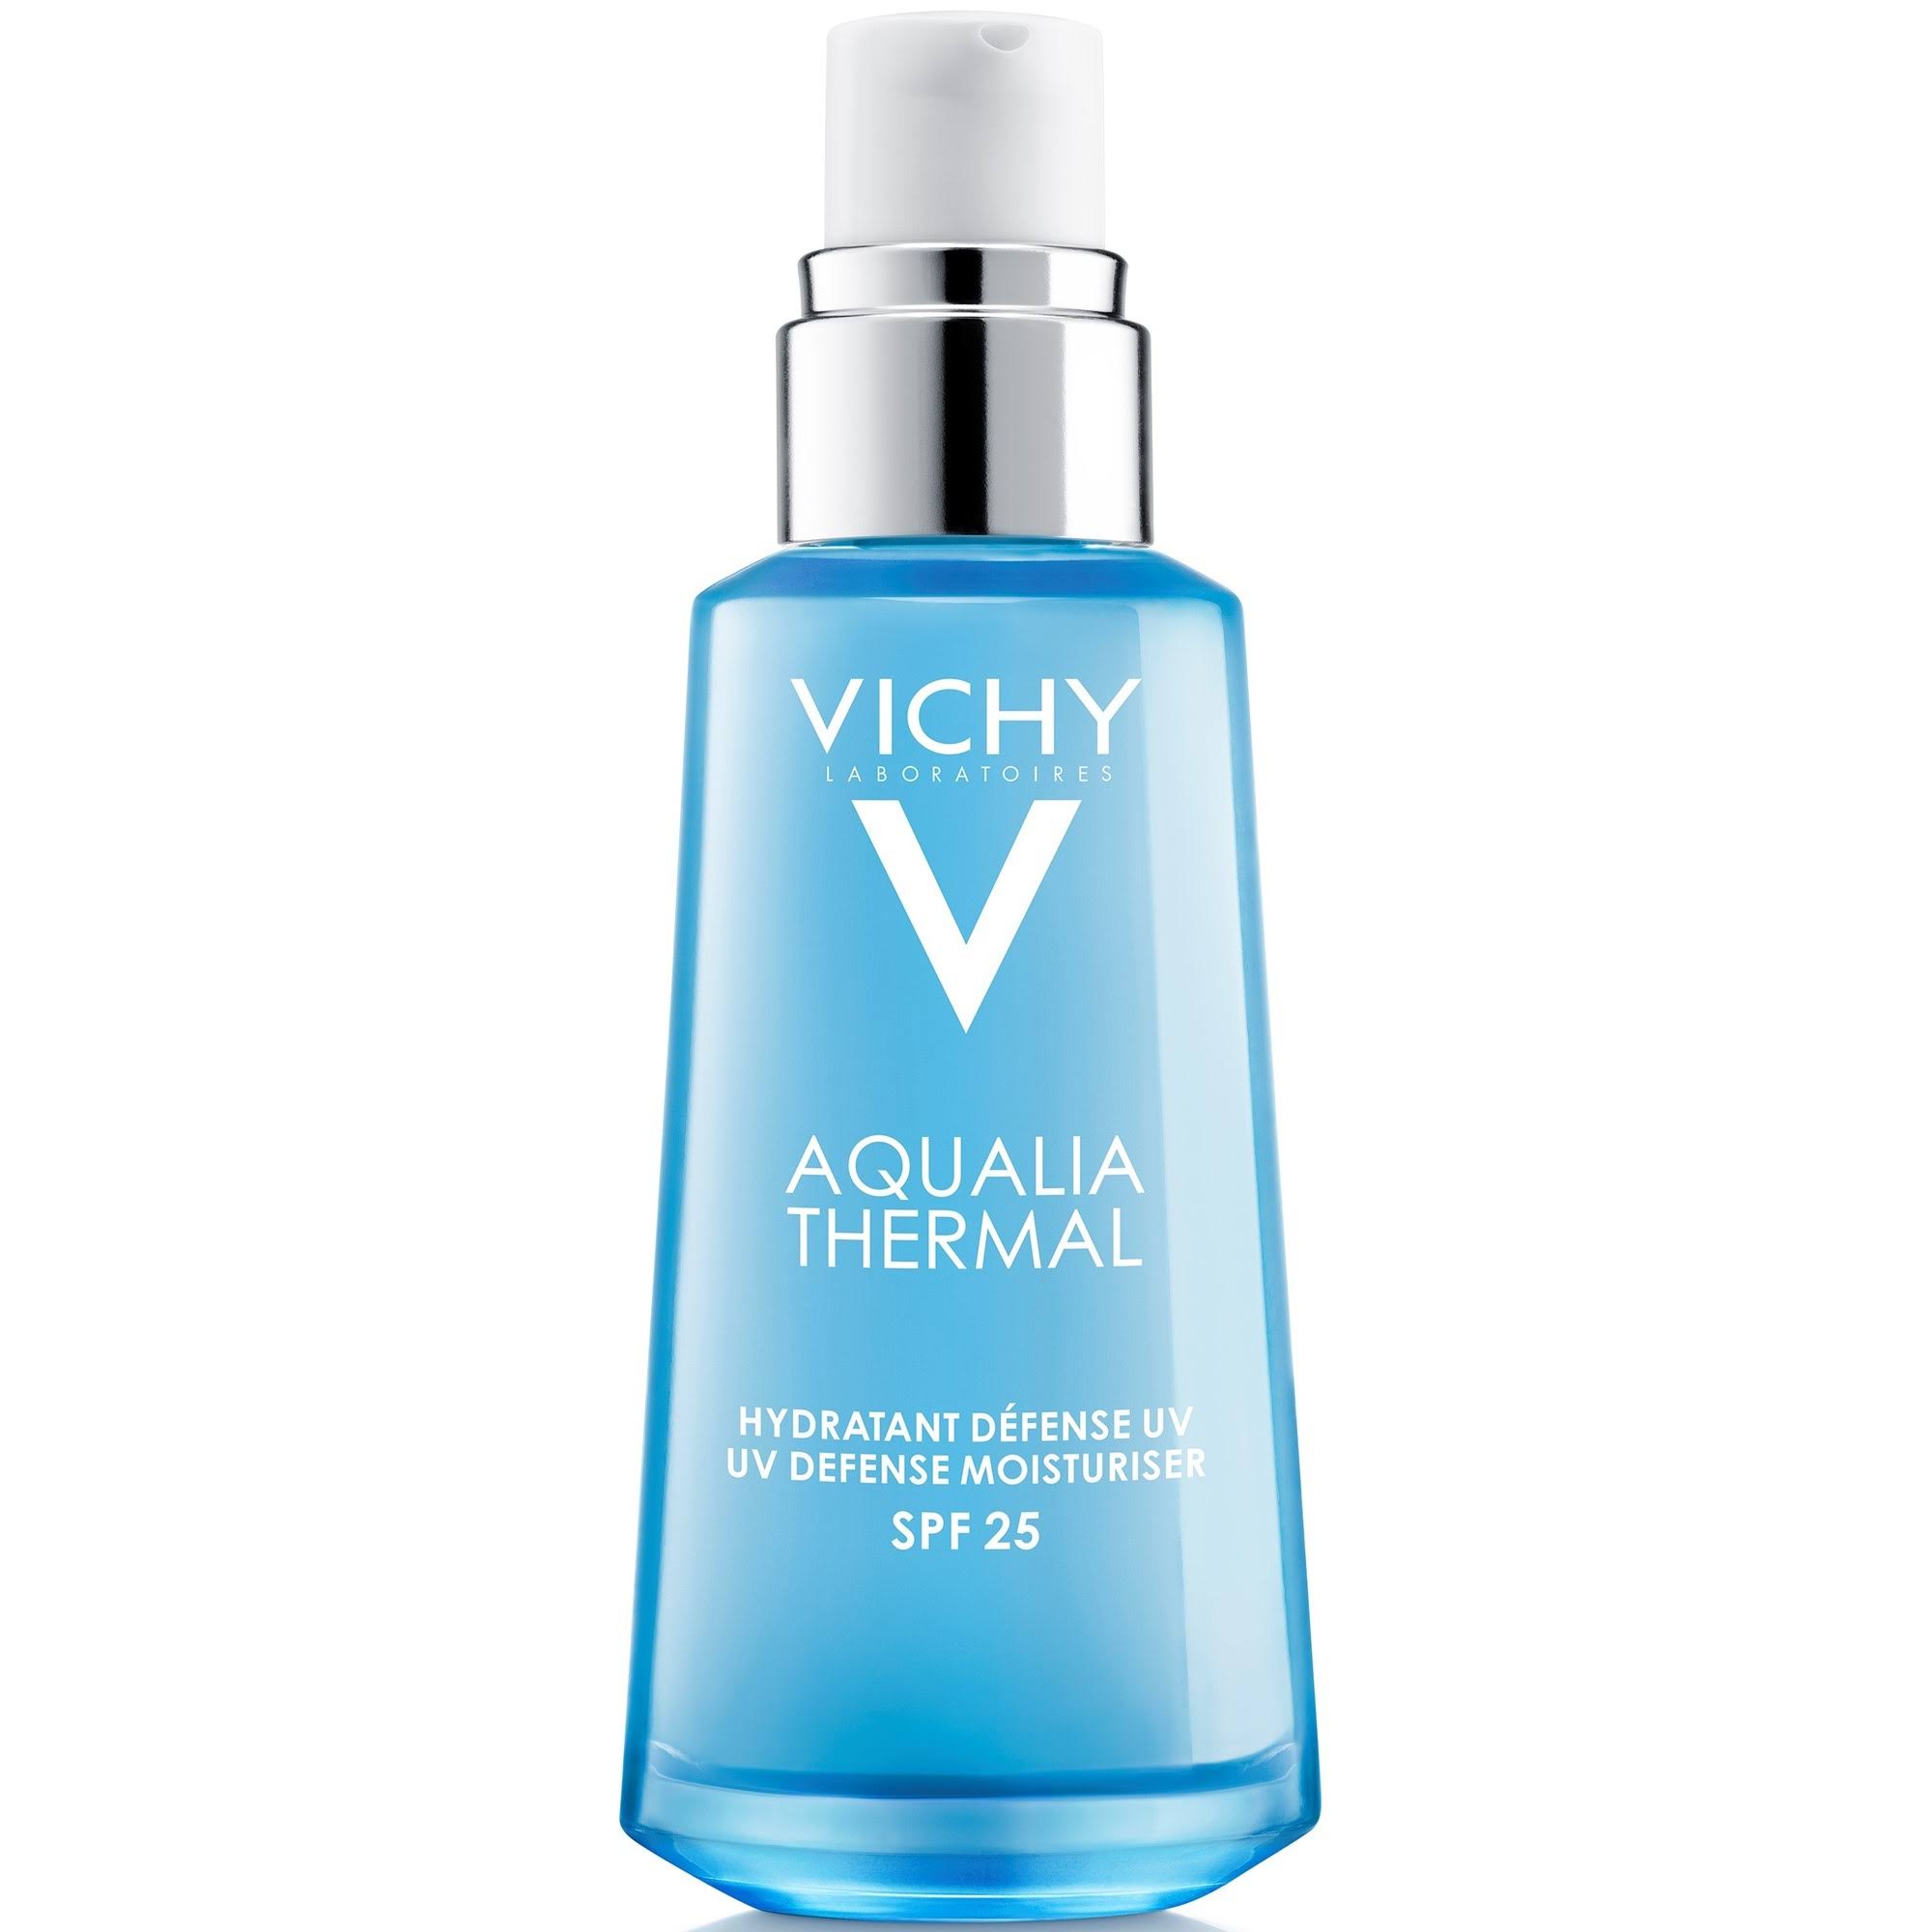 Vichy Aqualia Thermal UV Defense Moisturizer 50ml